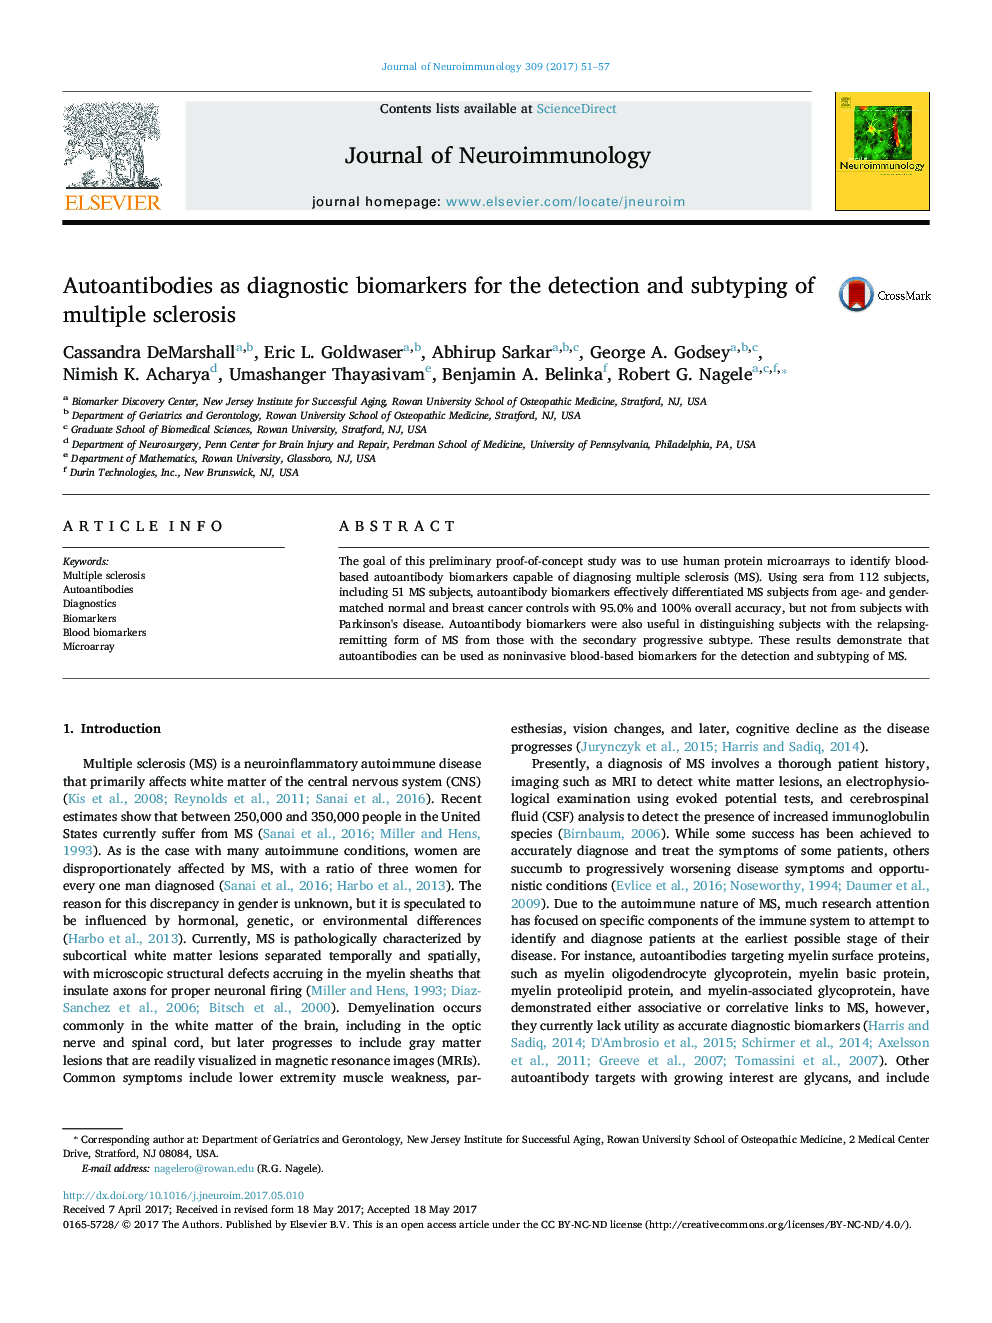 آنتیبادیهای خودکار به عنوان بیومارکرهای تشخیصی برای تشخیص و زیرتیپی مولتیپل اسکلروزیس 